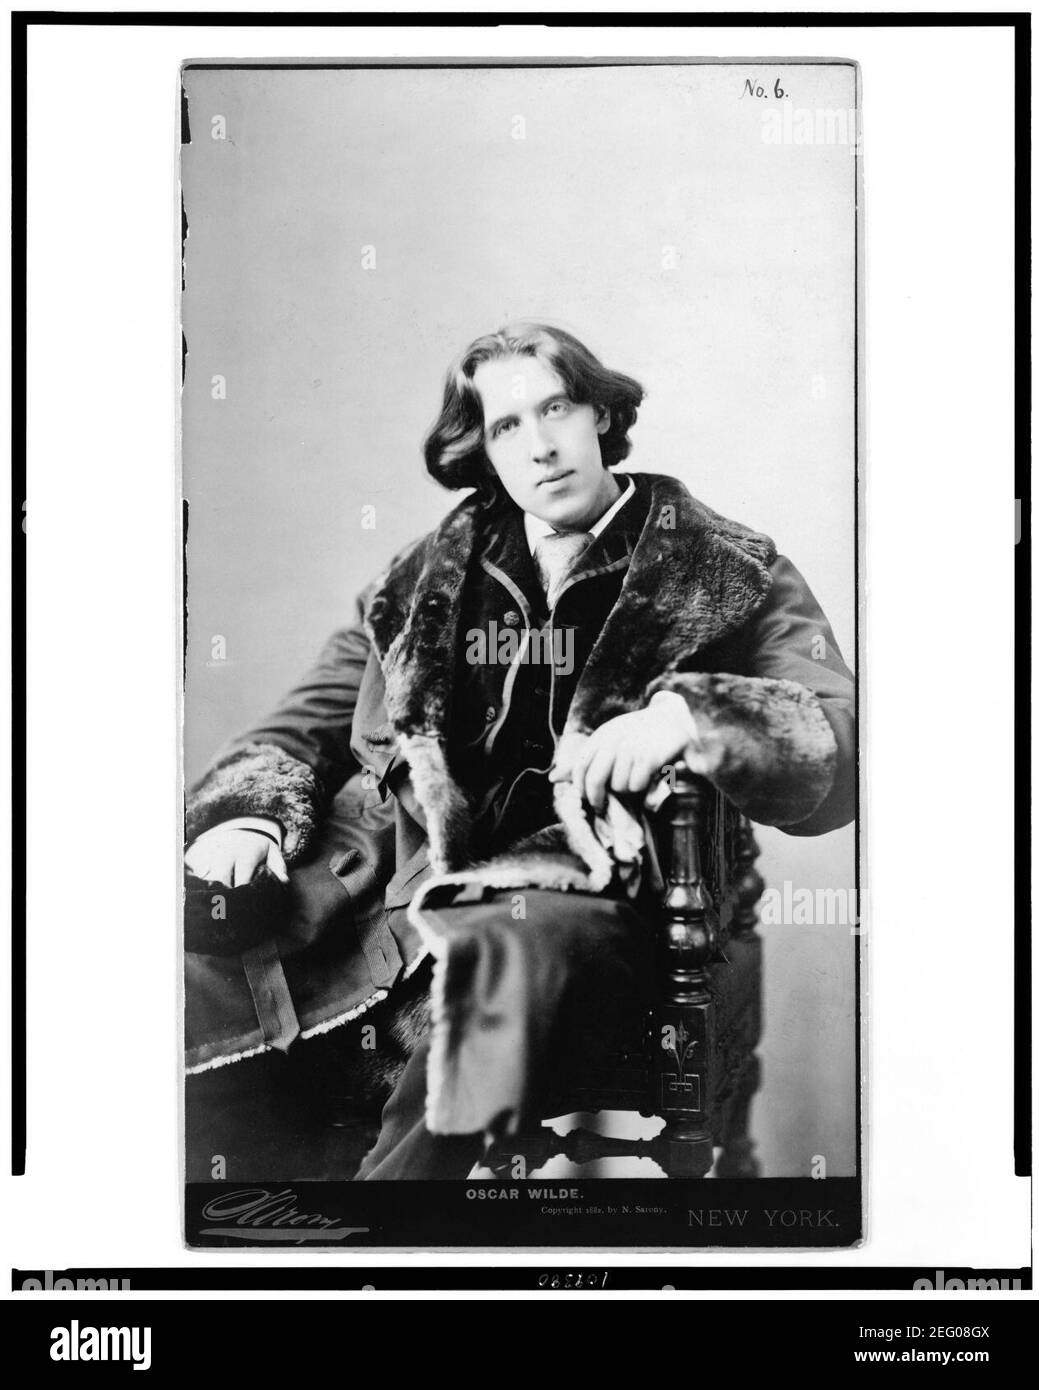 Oscar Wilde - Sarony, New York. Stock Photo